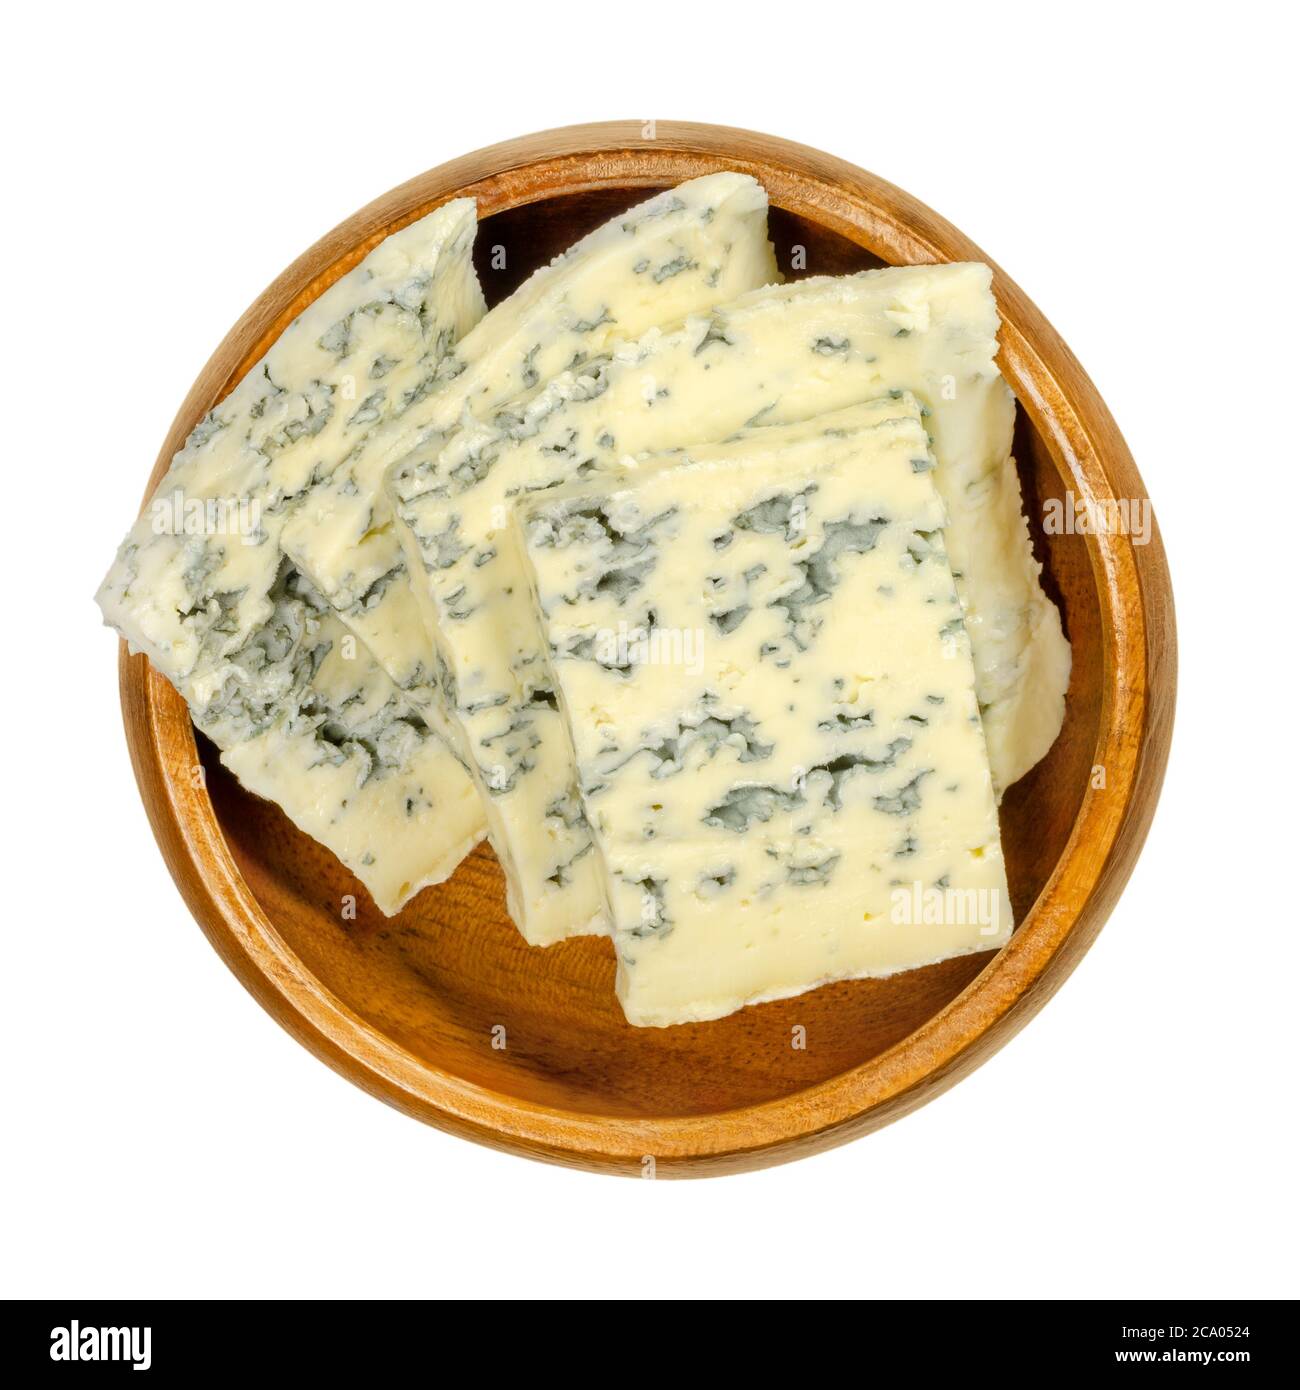 Blaue Käsescheiben in Holzschüssel. Bleu Käse mit Kulturen von Schimmel Penicillium gemacht, gibt es Flecken oder Adern, die in der Farbe variieren können. Stockfoto